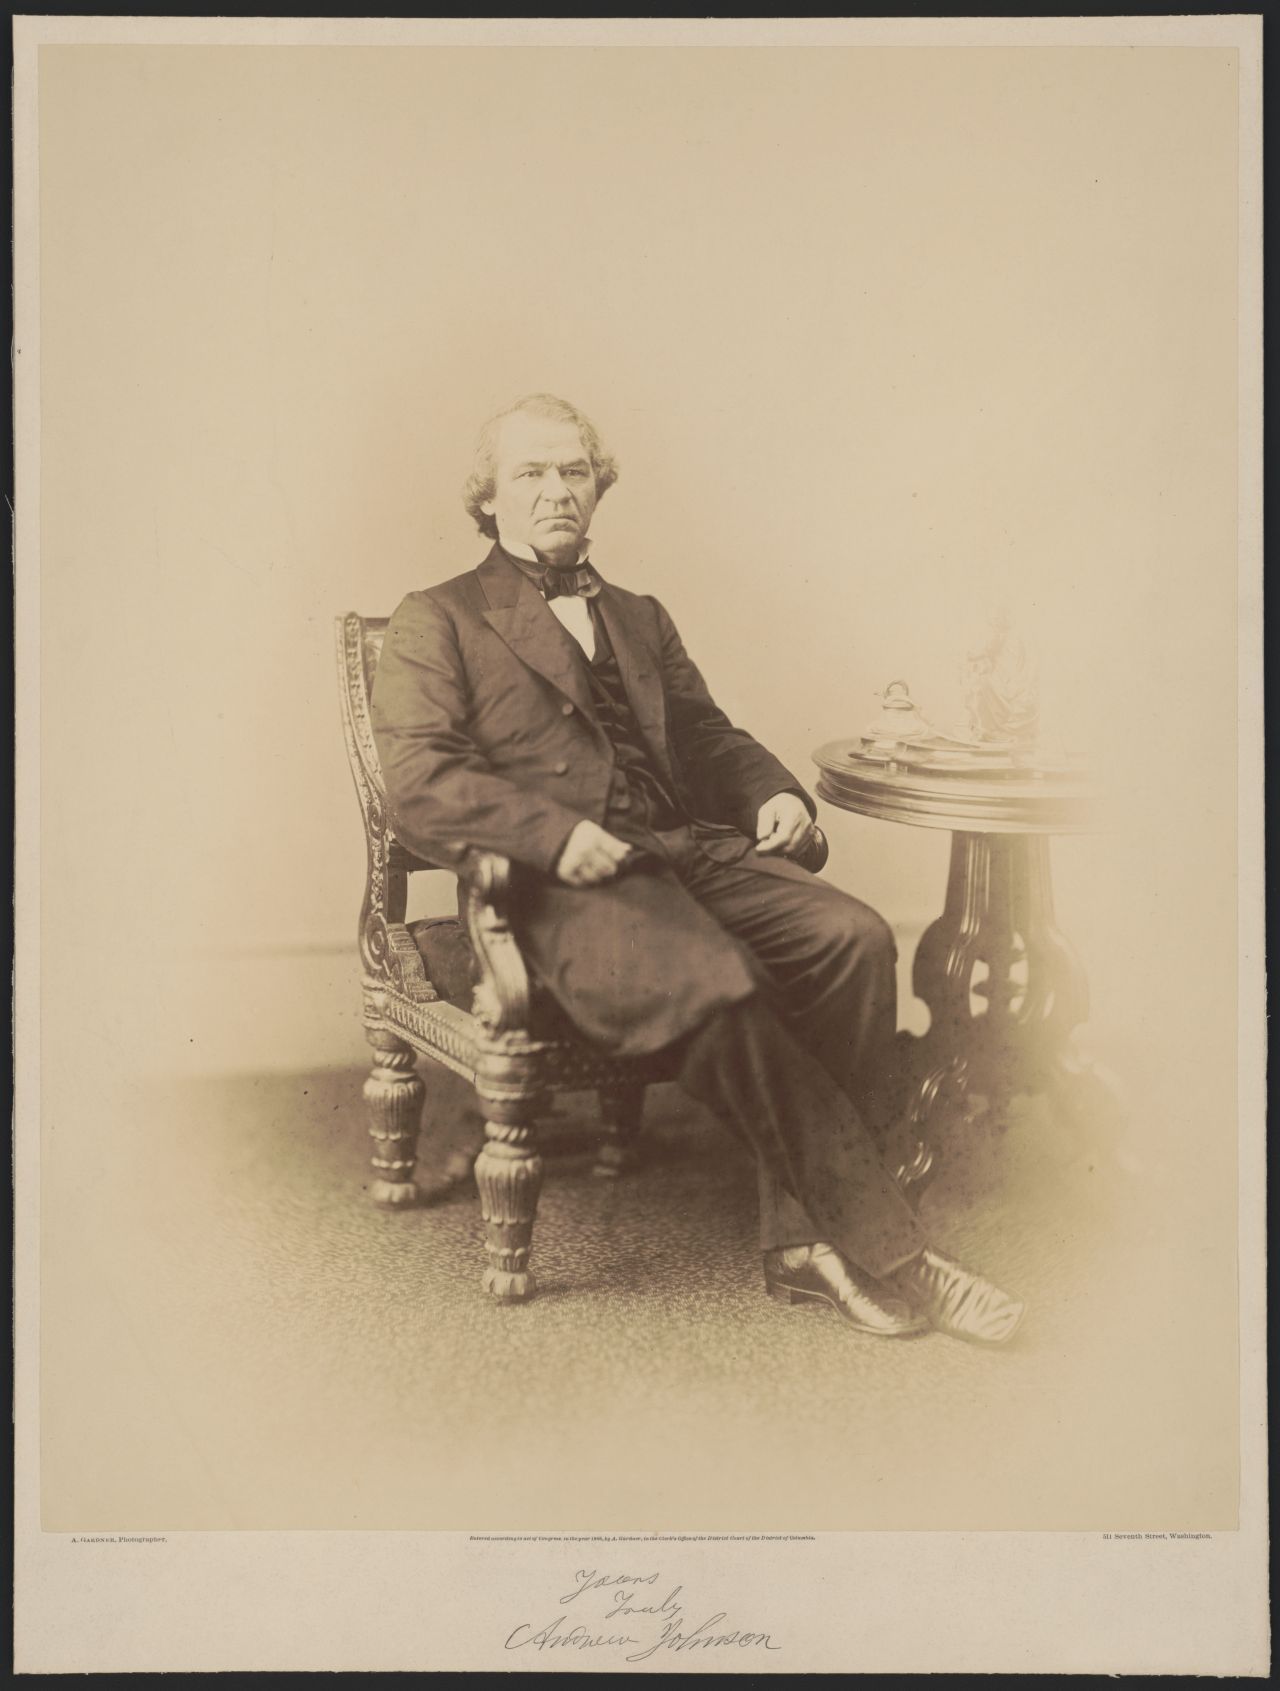 Andrew Johnson, US-Präsident zwischen 1865 und 1869, wurde vorgeworfen, einen Minister wegen politischer Differenzen aus dem Amt gedrängt und seinen Nachfolger ohne Zustimmung des Senats ernannt zu haben. Doch zur Zweidrittel-Mehrheit für eine Amtsenthebung fehlte 1 Stimme.